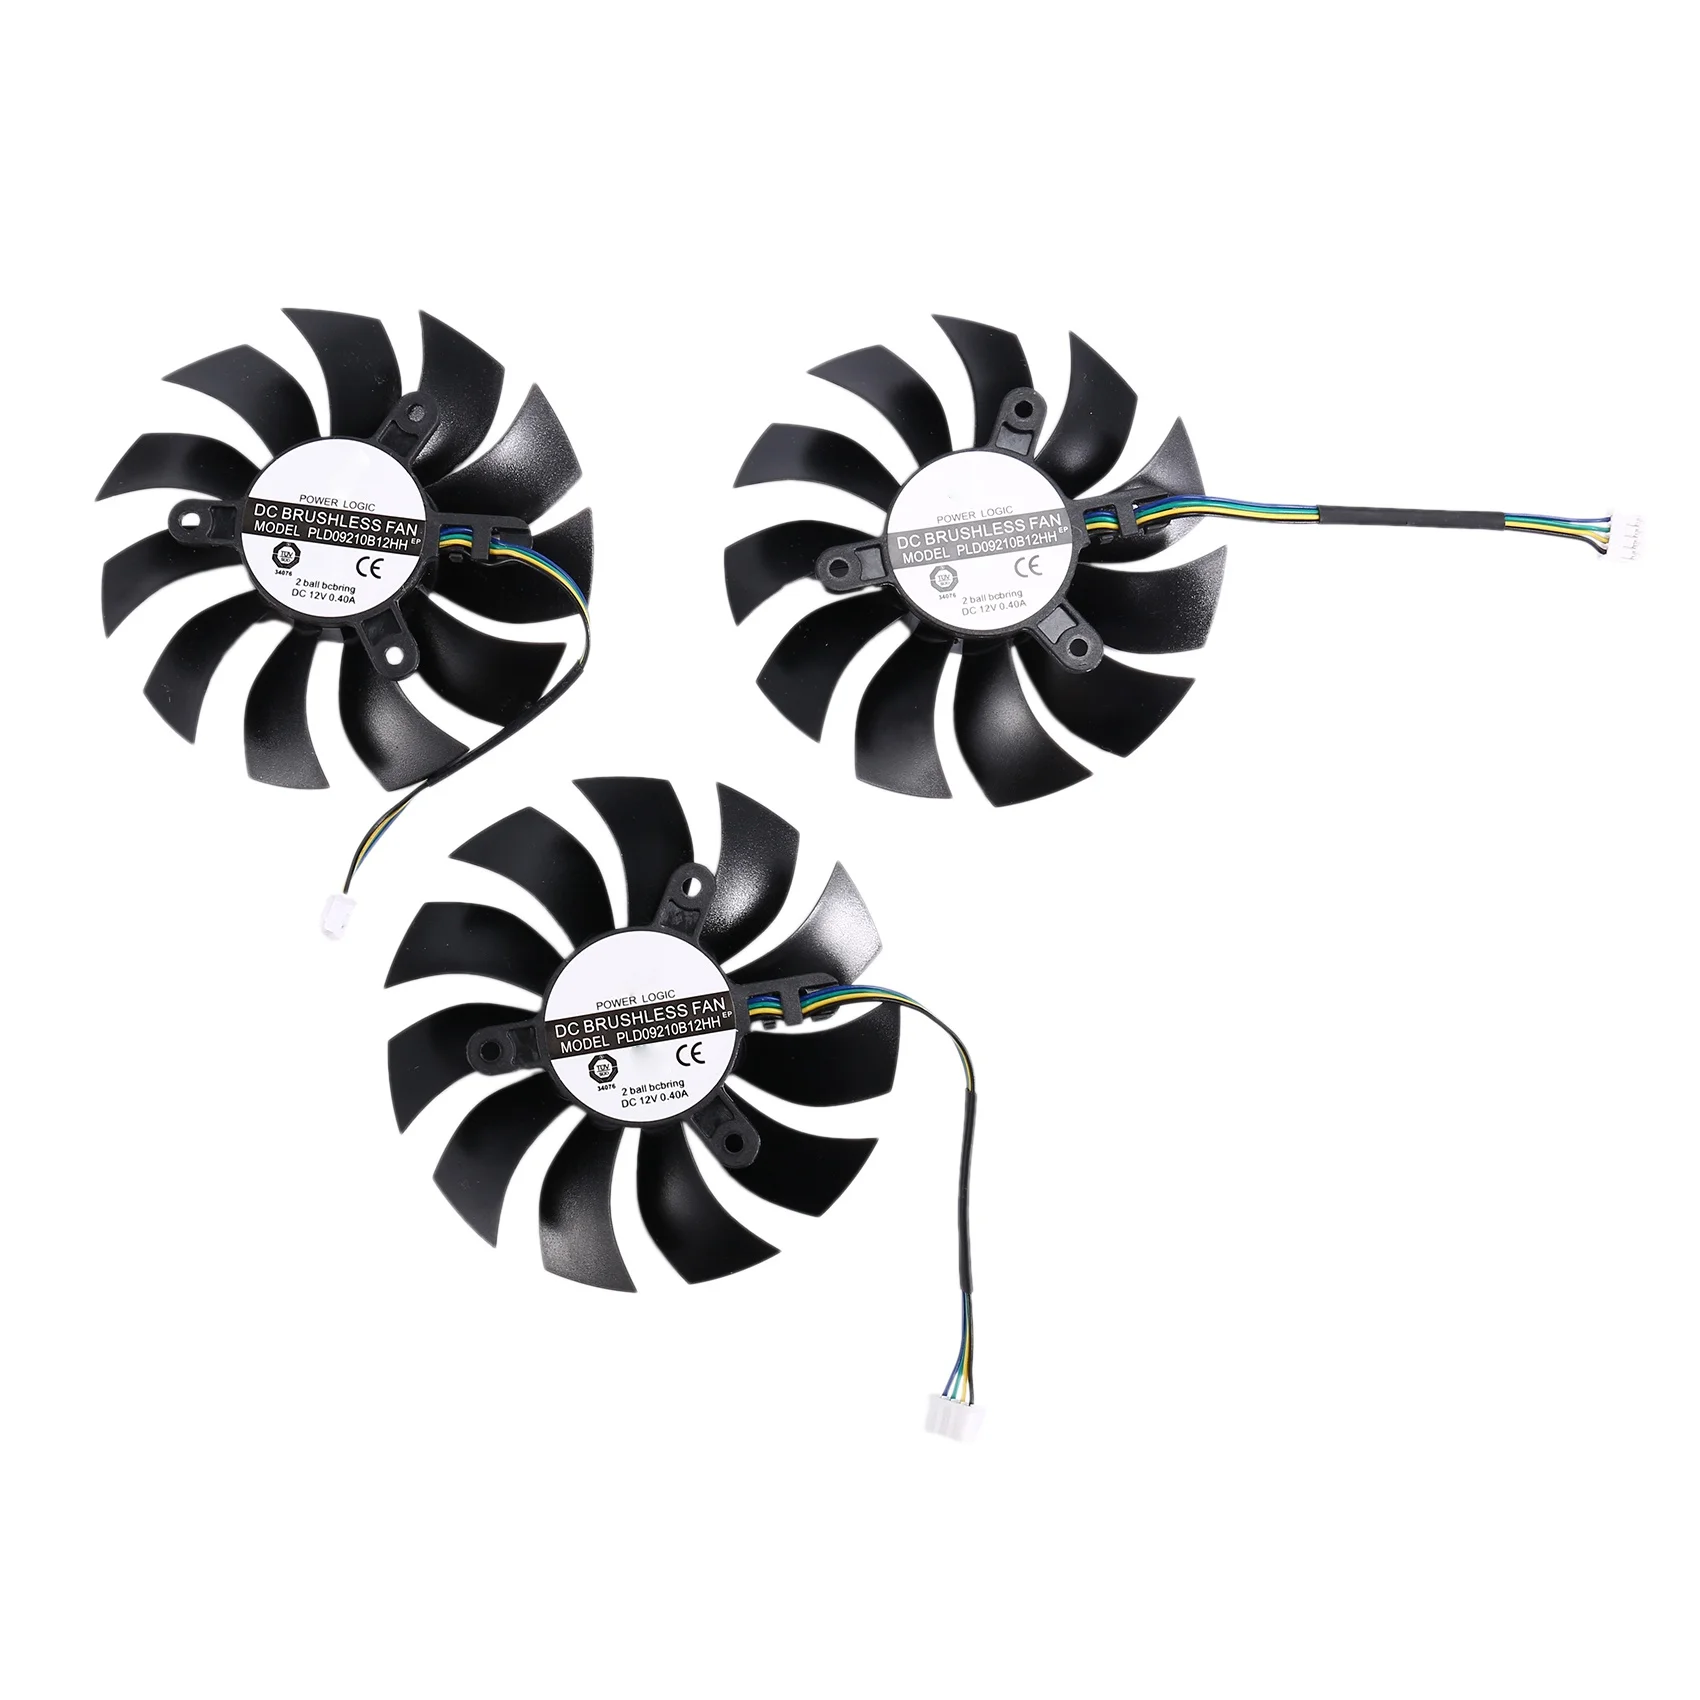 

3Pcs PLA09215B12H 12V 0.55A 4Pin for EVGA GTX1080TI FTW3 GTX 1080 Ti Black Fan Graphics Card Cooling Fan